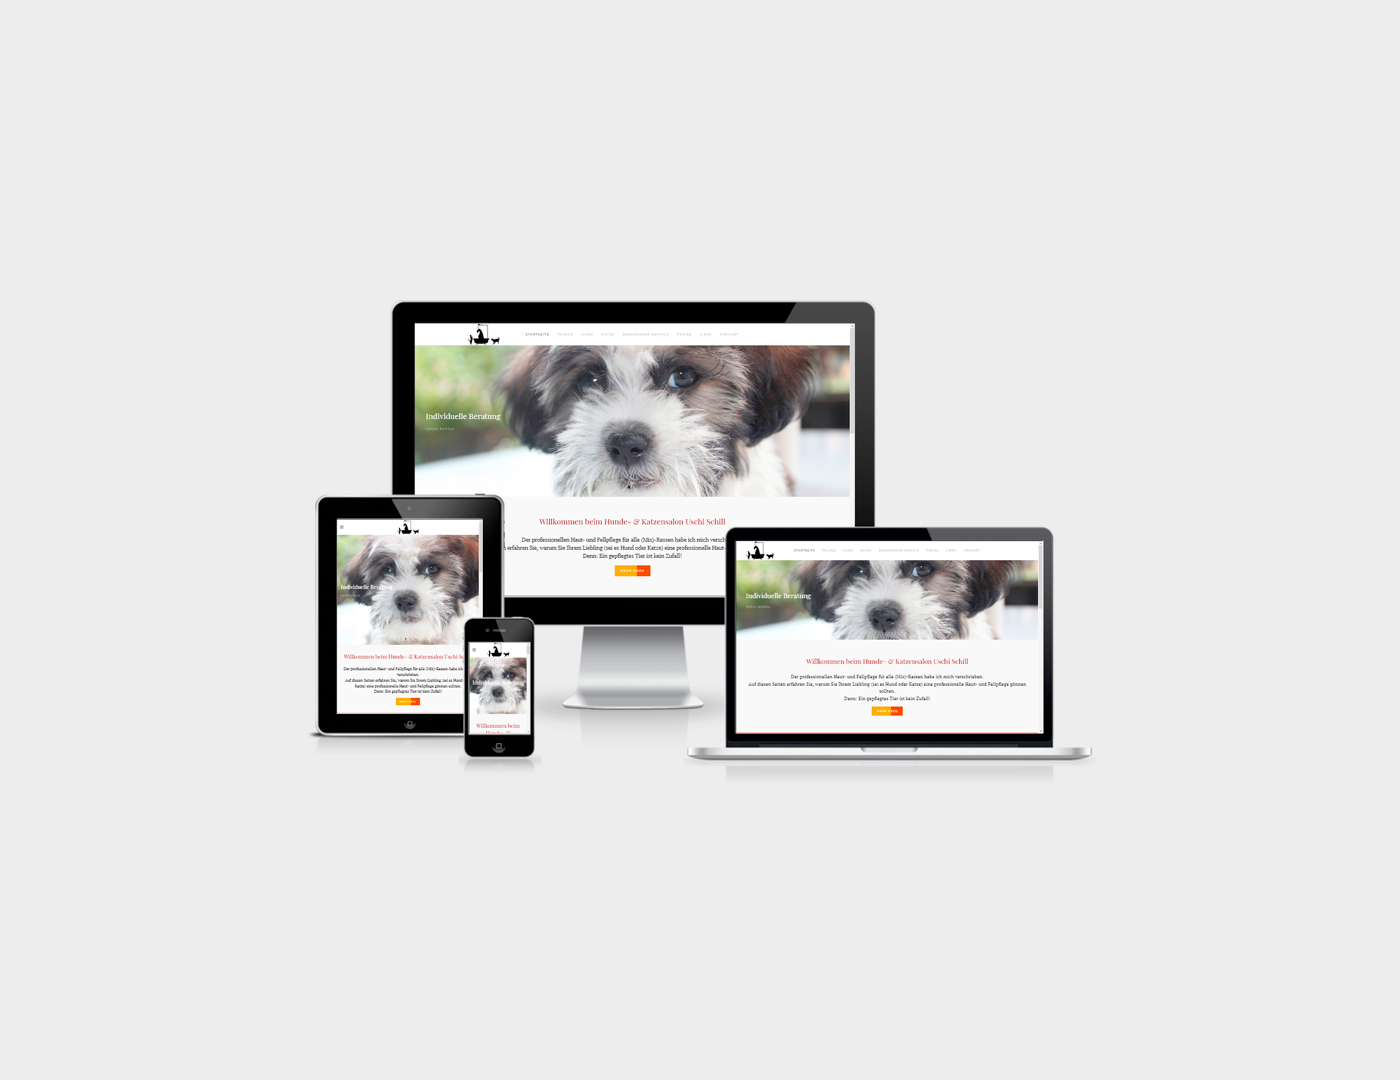 Webdesign Bad Neuenahr-Ahrweiler erstellte Webseite fuer Eifel-Hundesalon in Belgien in der Eifel an der belgischen-deutschen Grenze